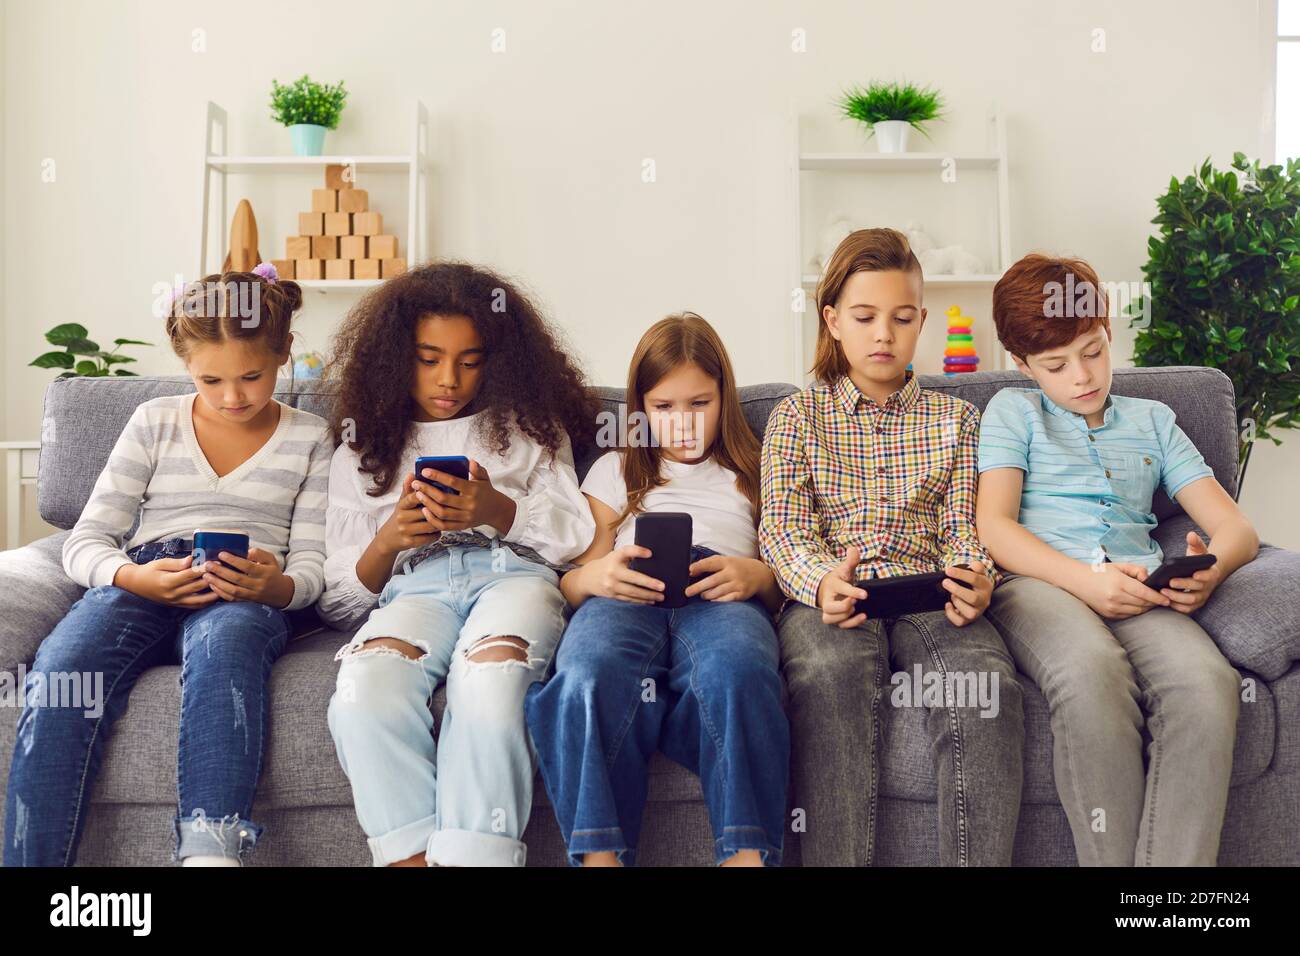 Un groupe d'enfants mécontents jouent à des jeux en ligne ou lisent des réseaux sociaux sur des téléphones mobiles. Banque D'Images